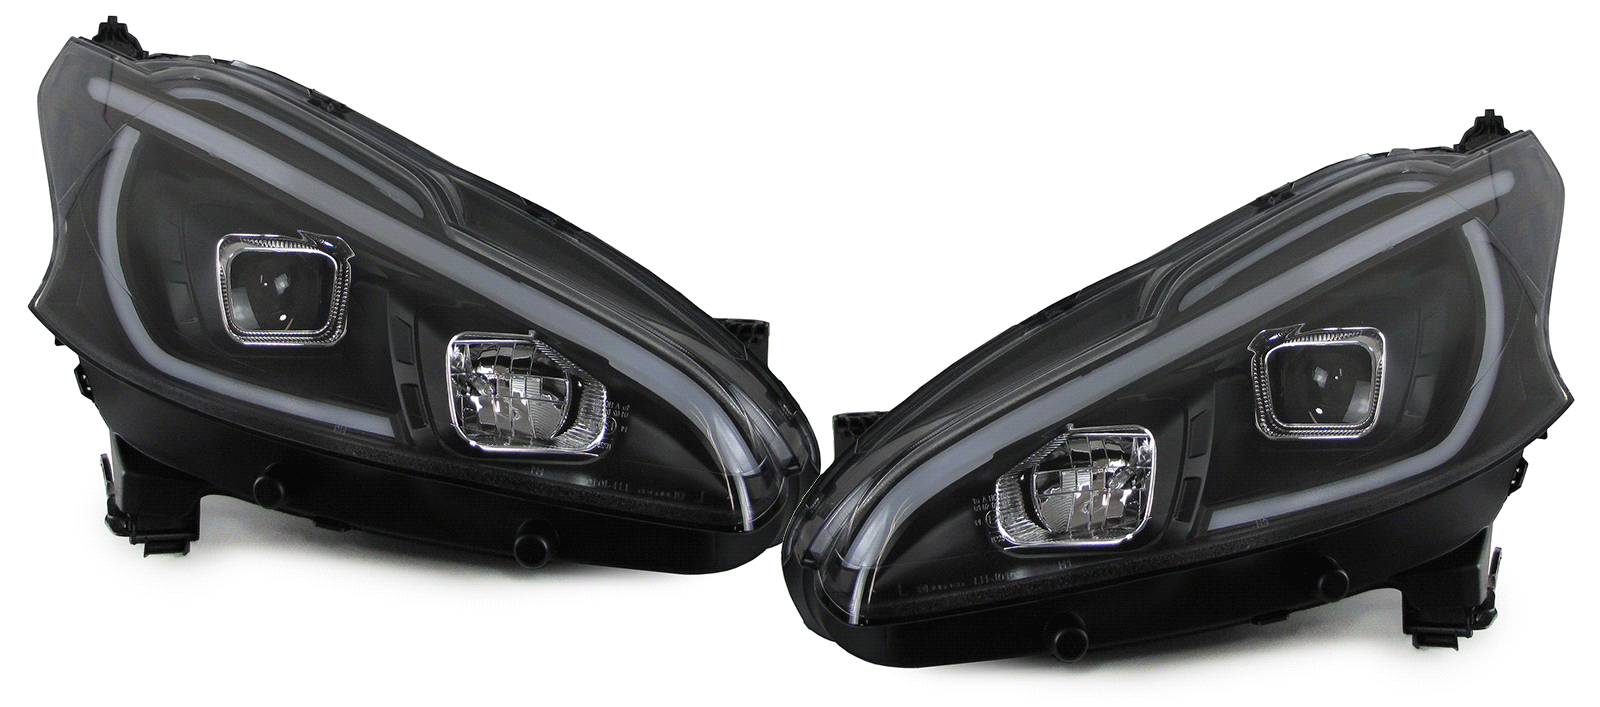 Scheinwerfer LED Tagfahrlicht Optik für Peugeot 208 Bj. 12-15 Schwarz LTI, 208, Peugeot, Scheinwerfer